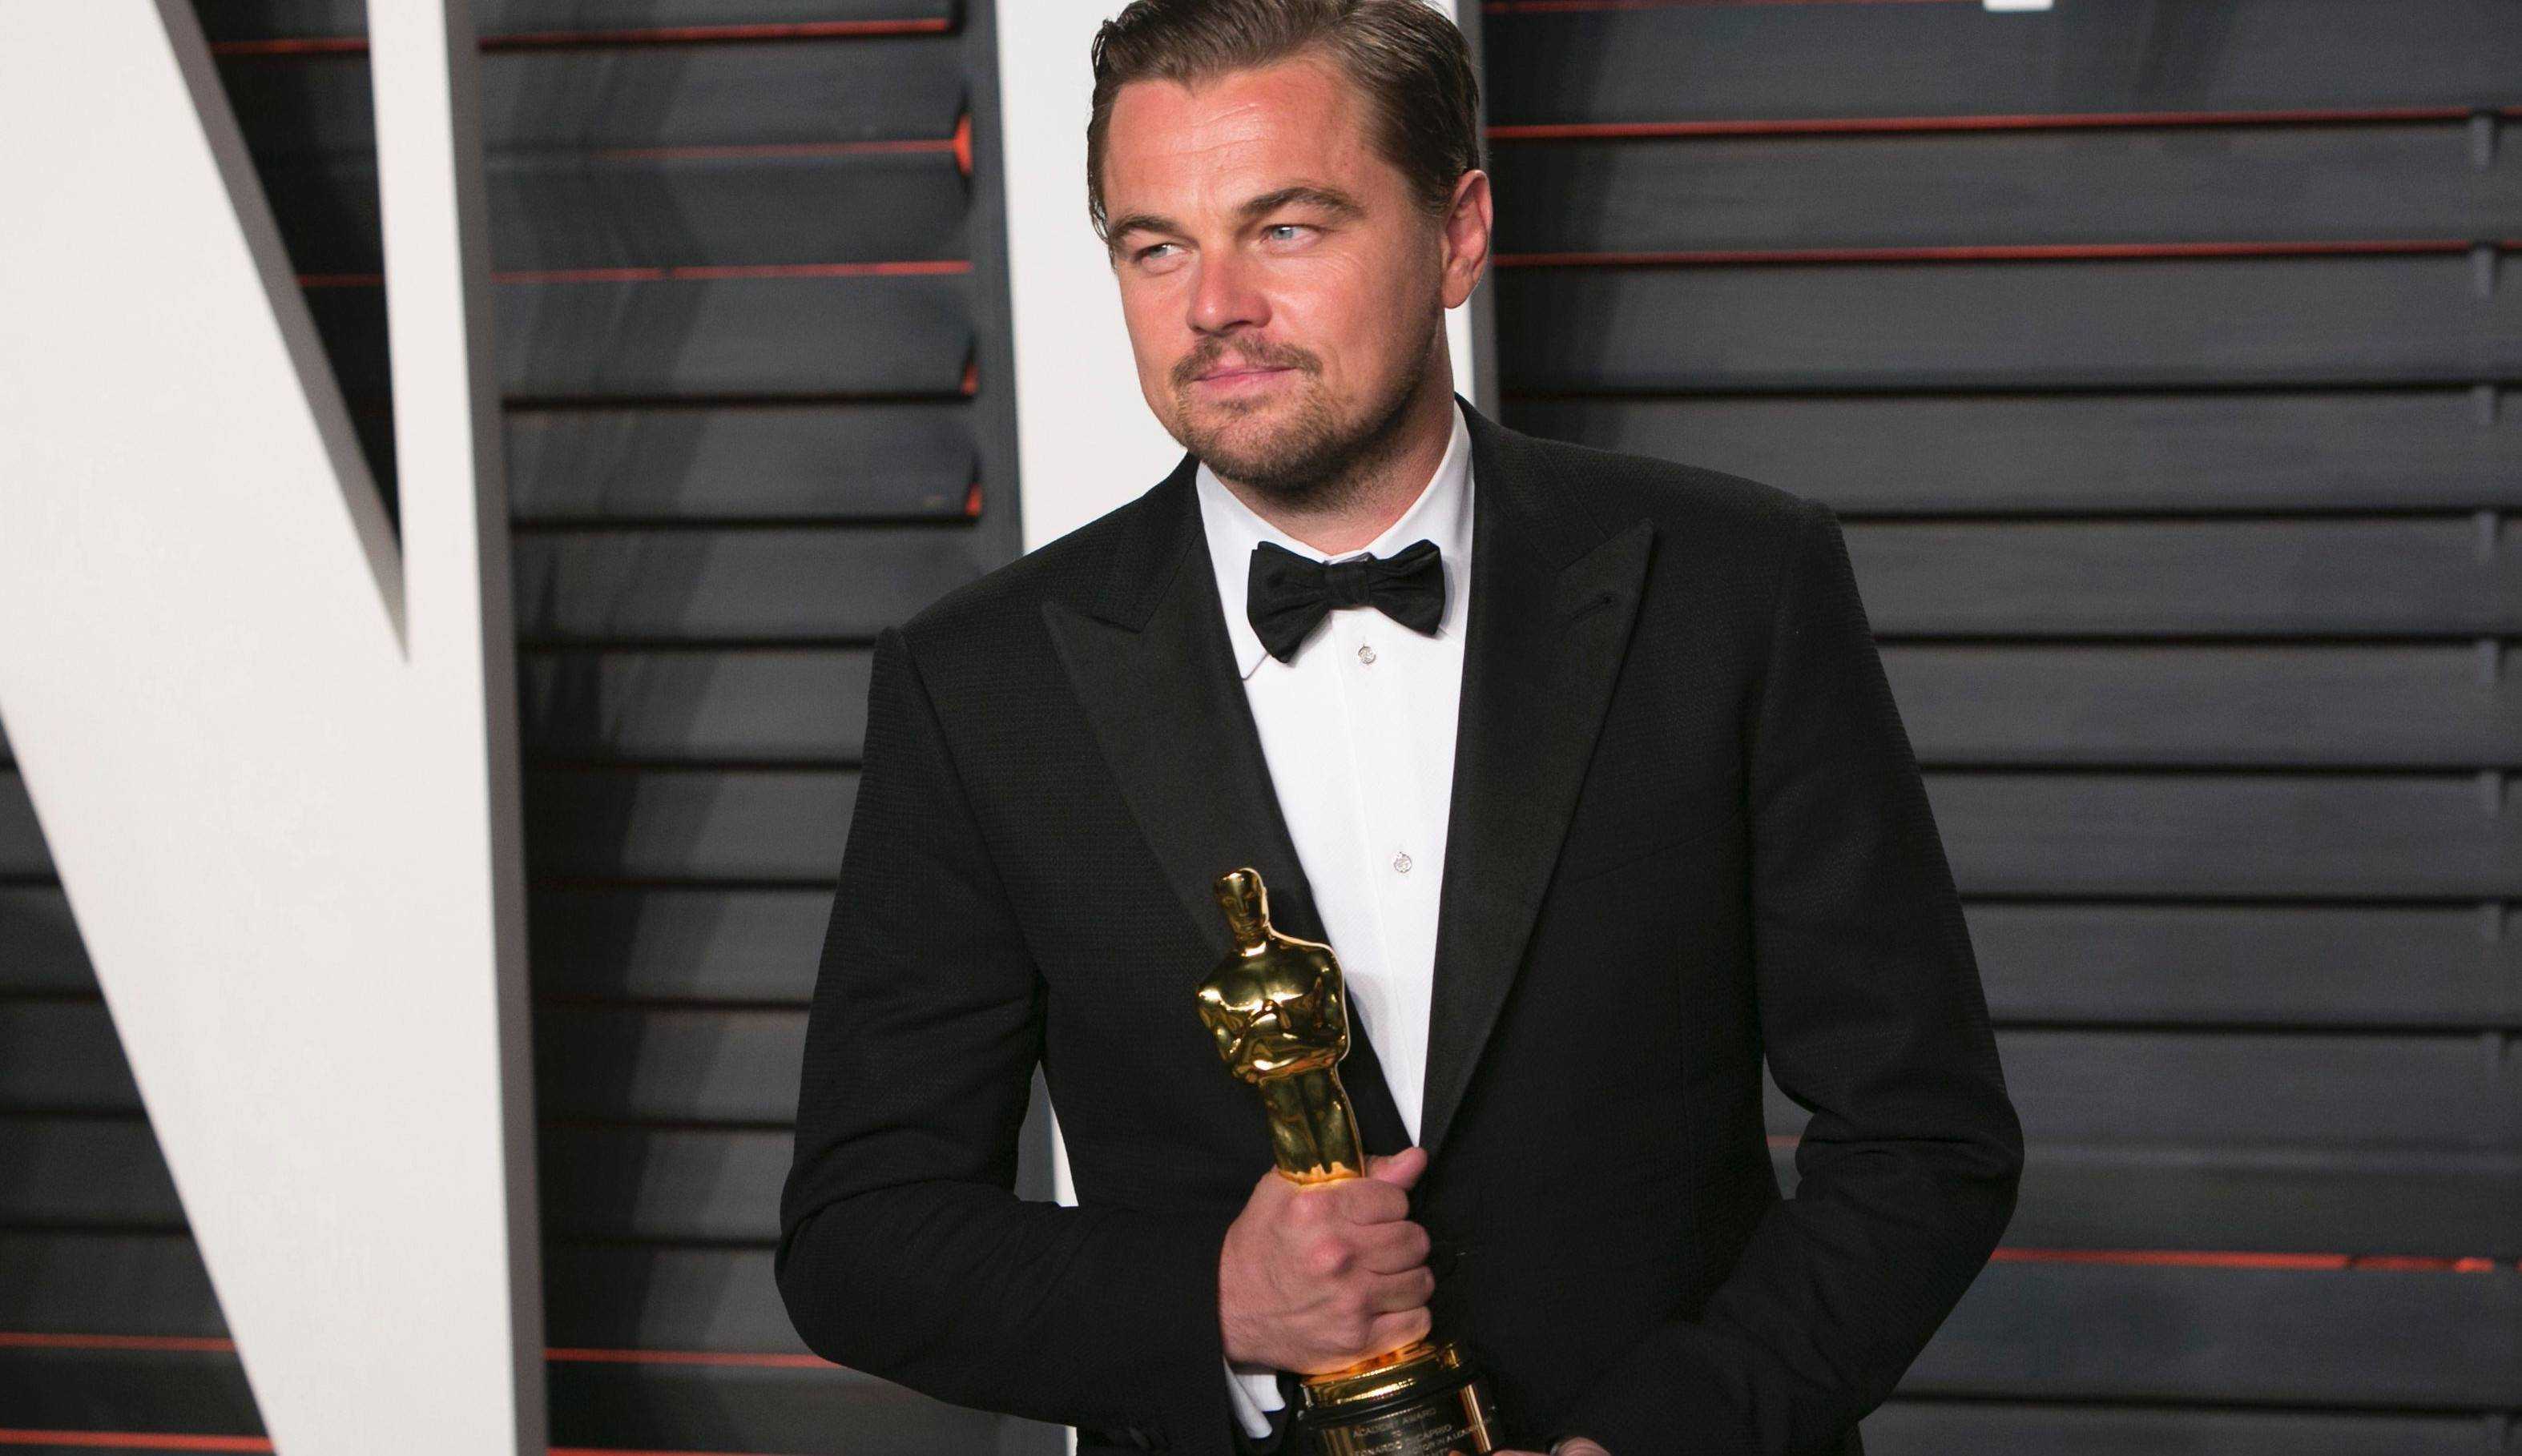 Conheça os principais papéis da carreira de Leonardo DiCaprio, o aniversariante do dia